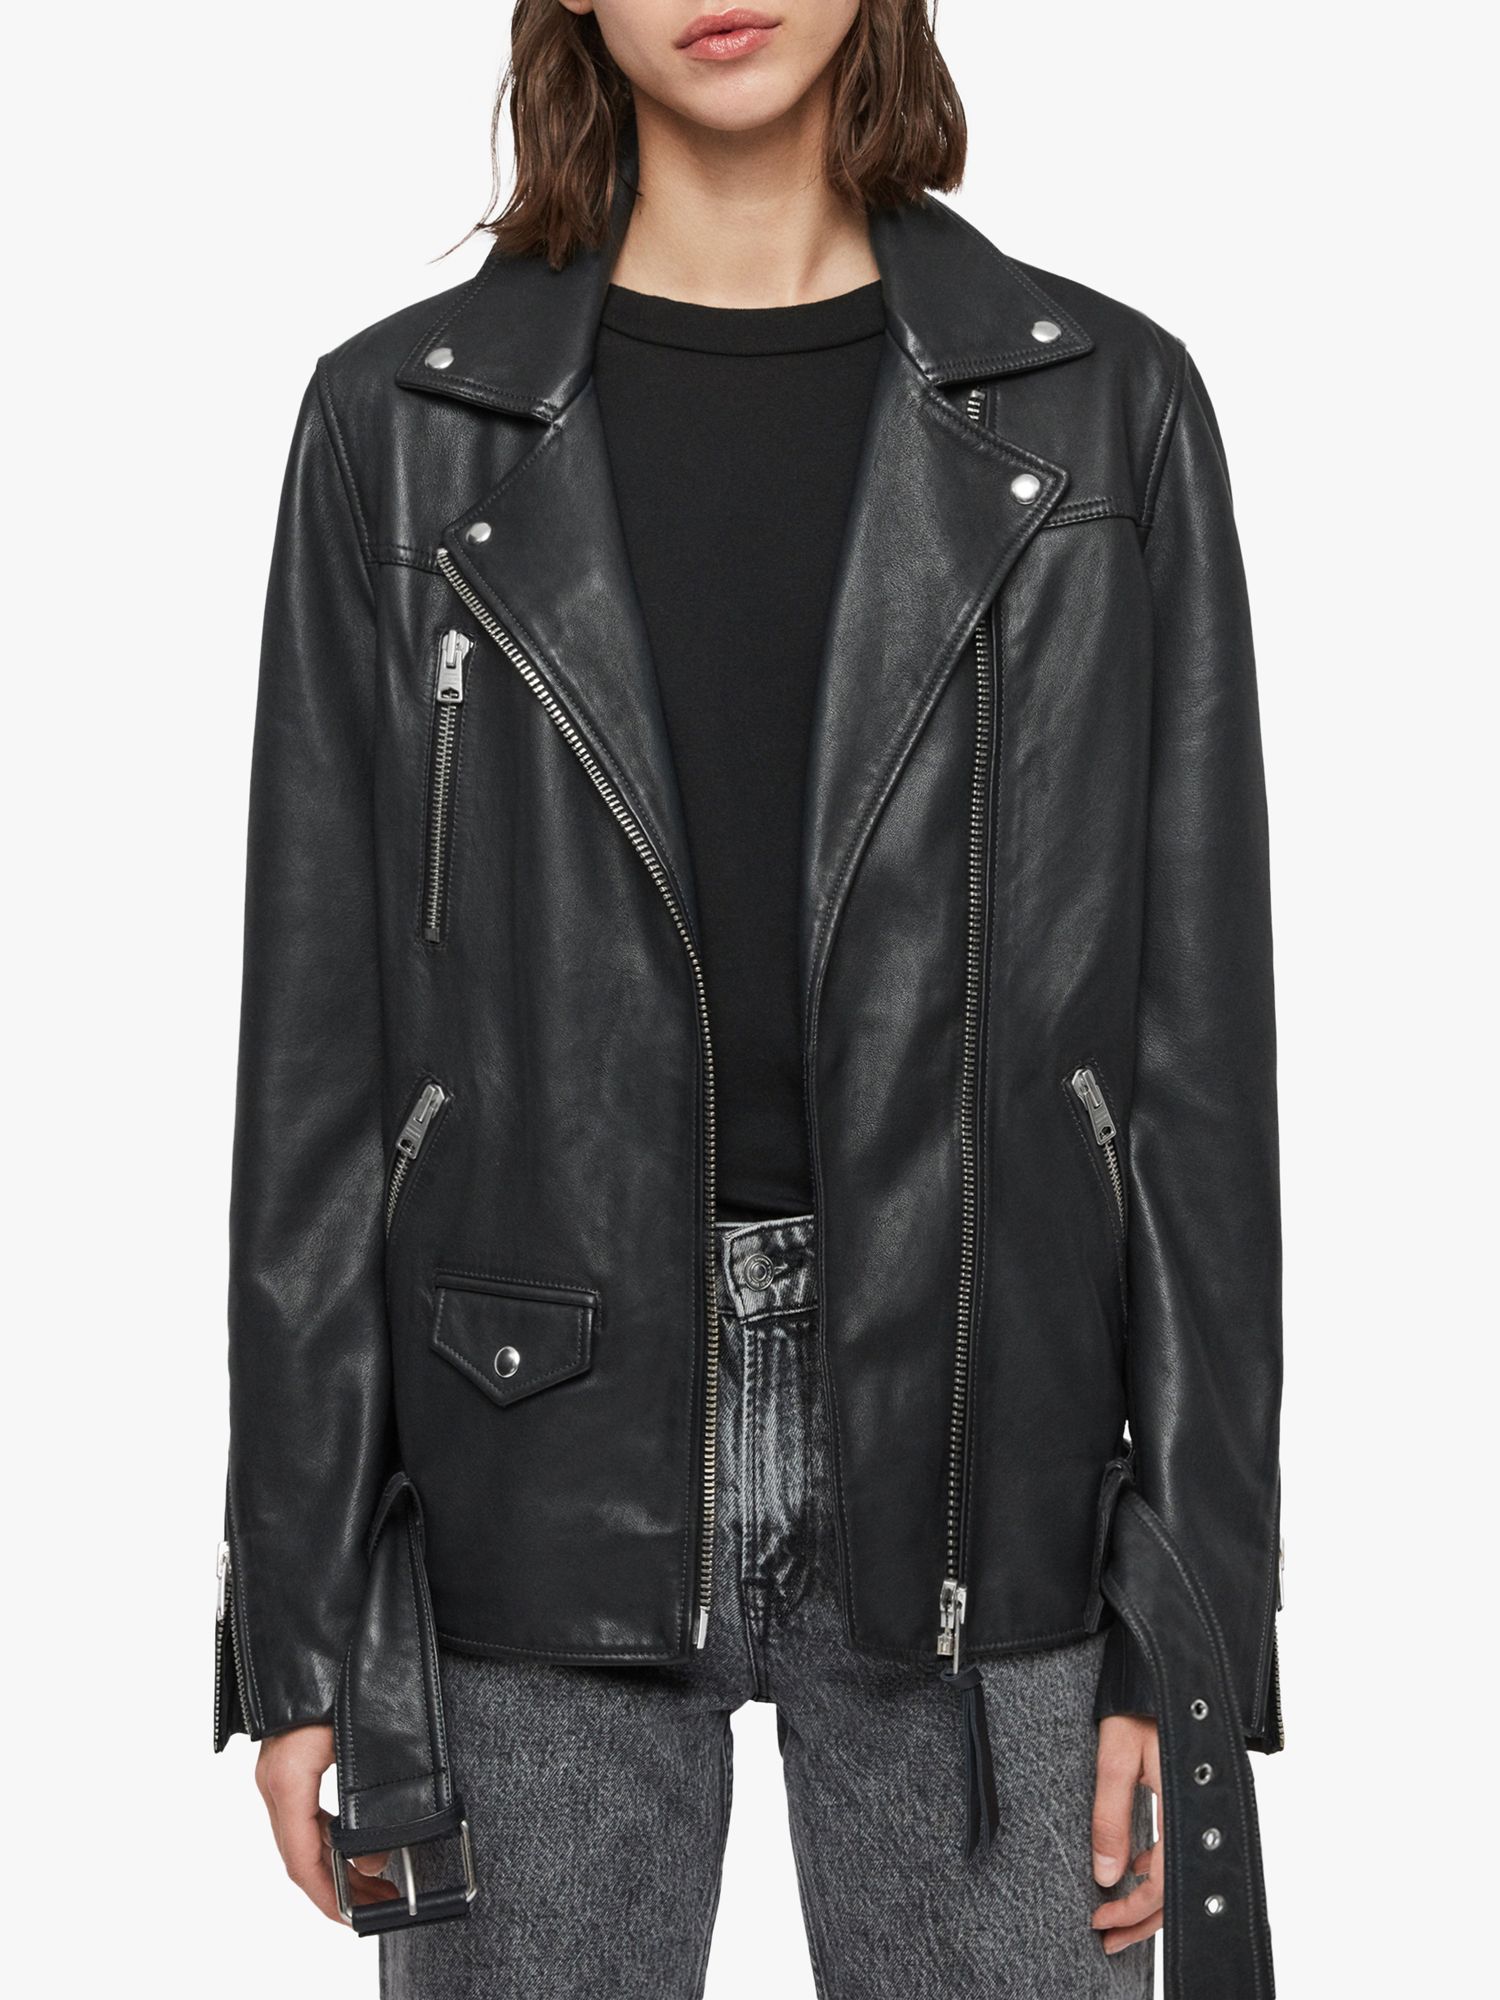 AllSaints Eline Oversized Leather Biker Jacket, Black, S